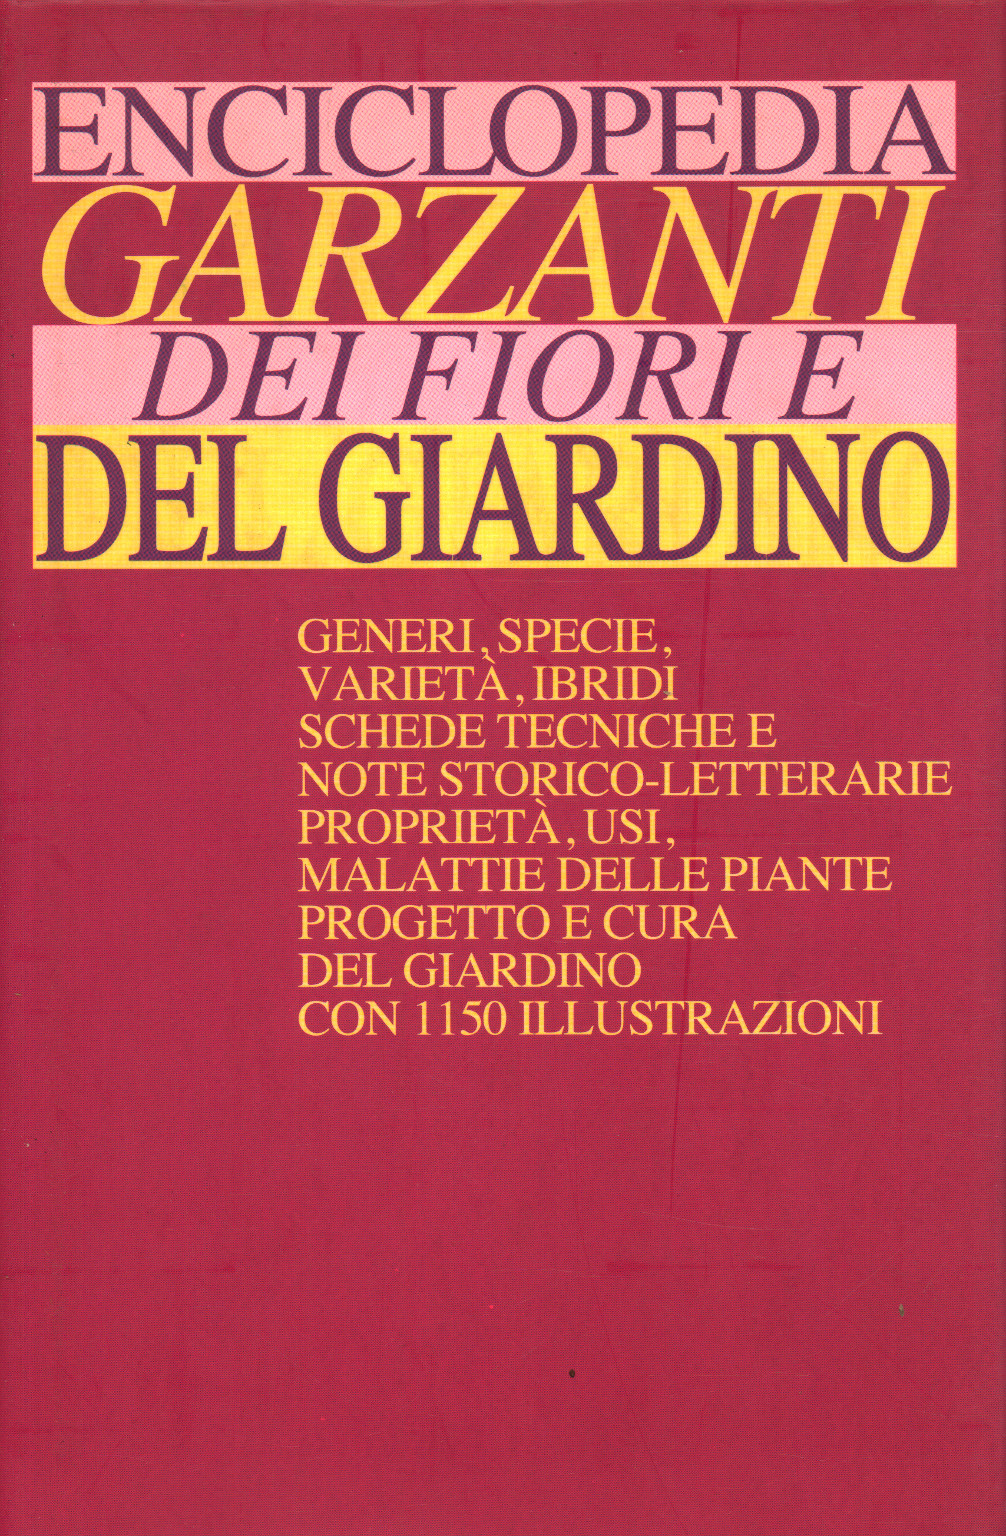 Enciclopedia dei Fiori e del Giardino, s.a.